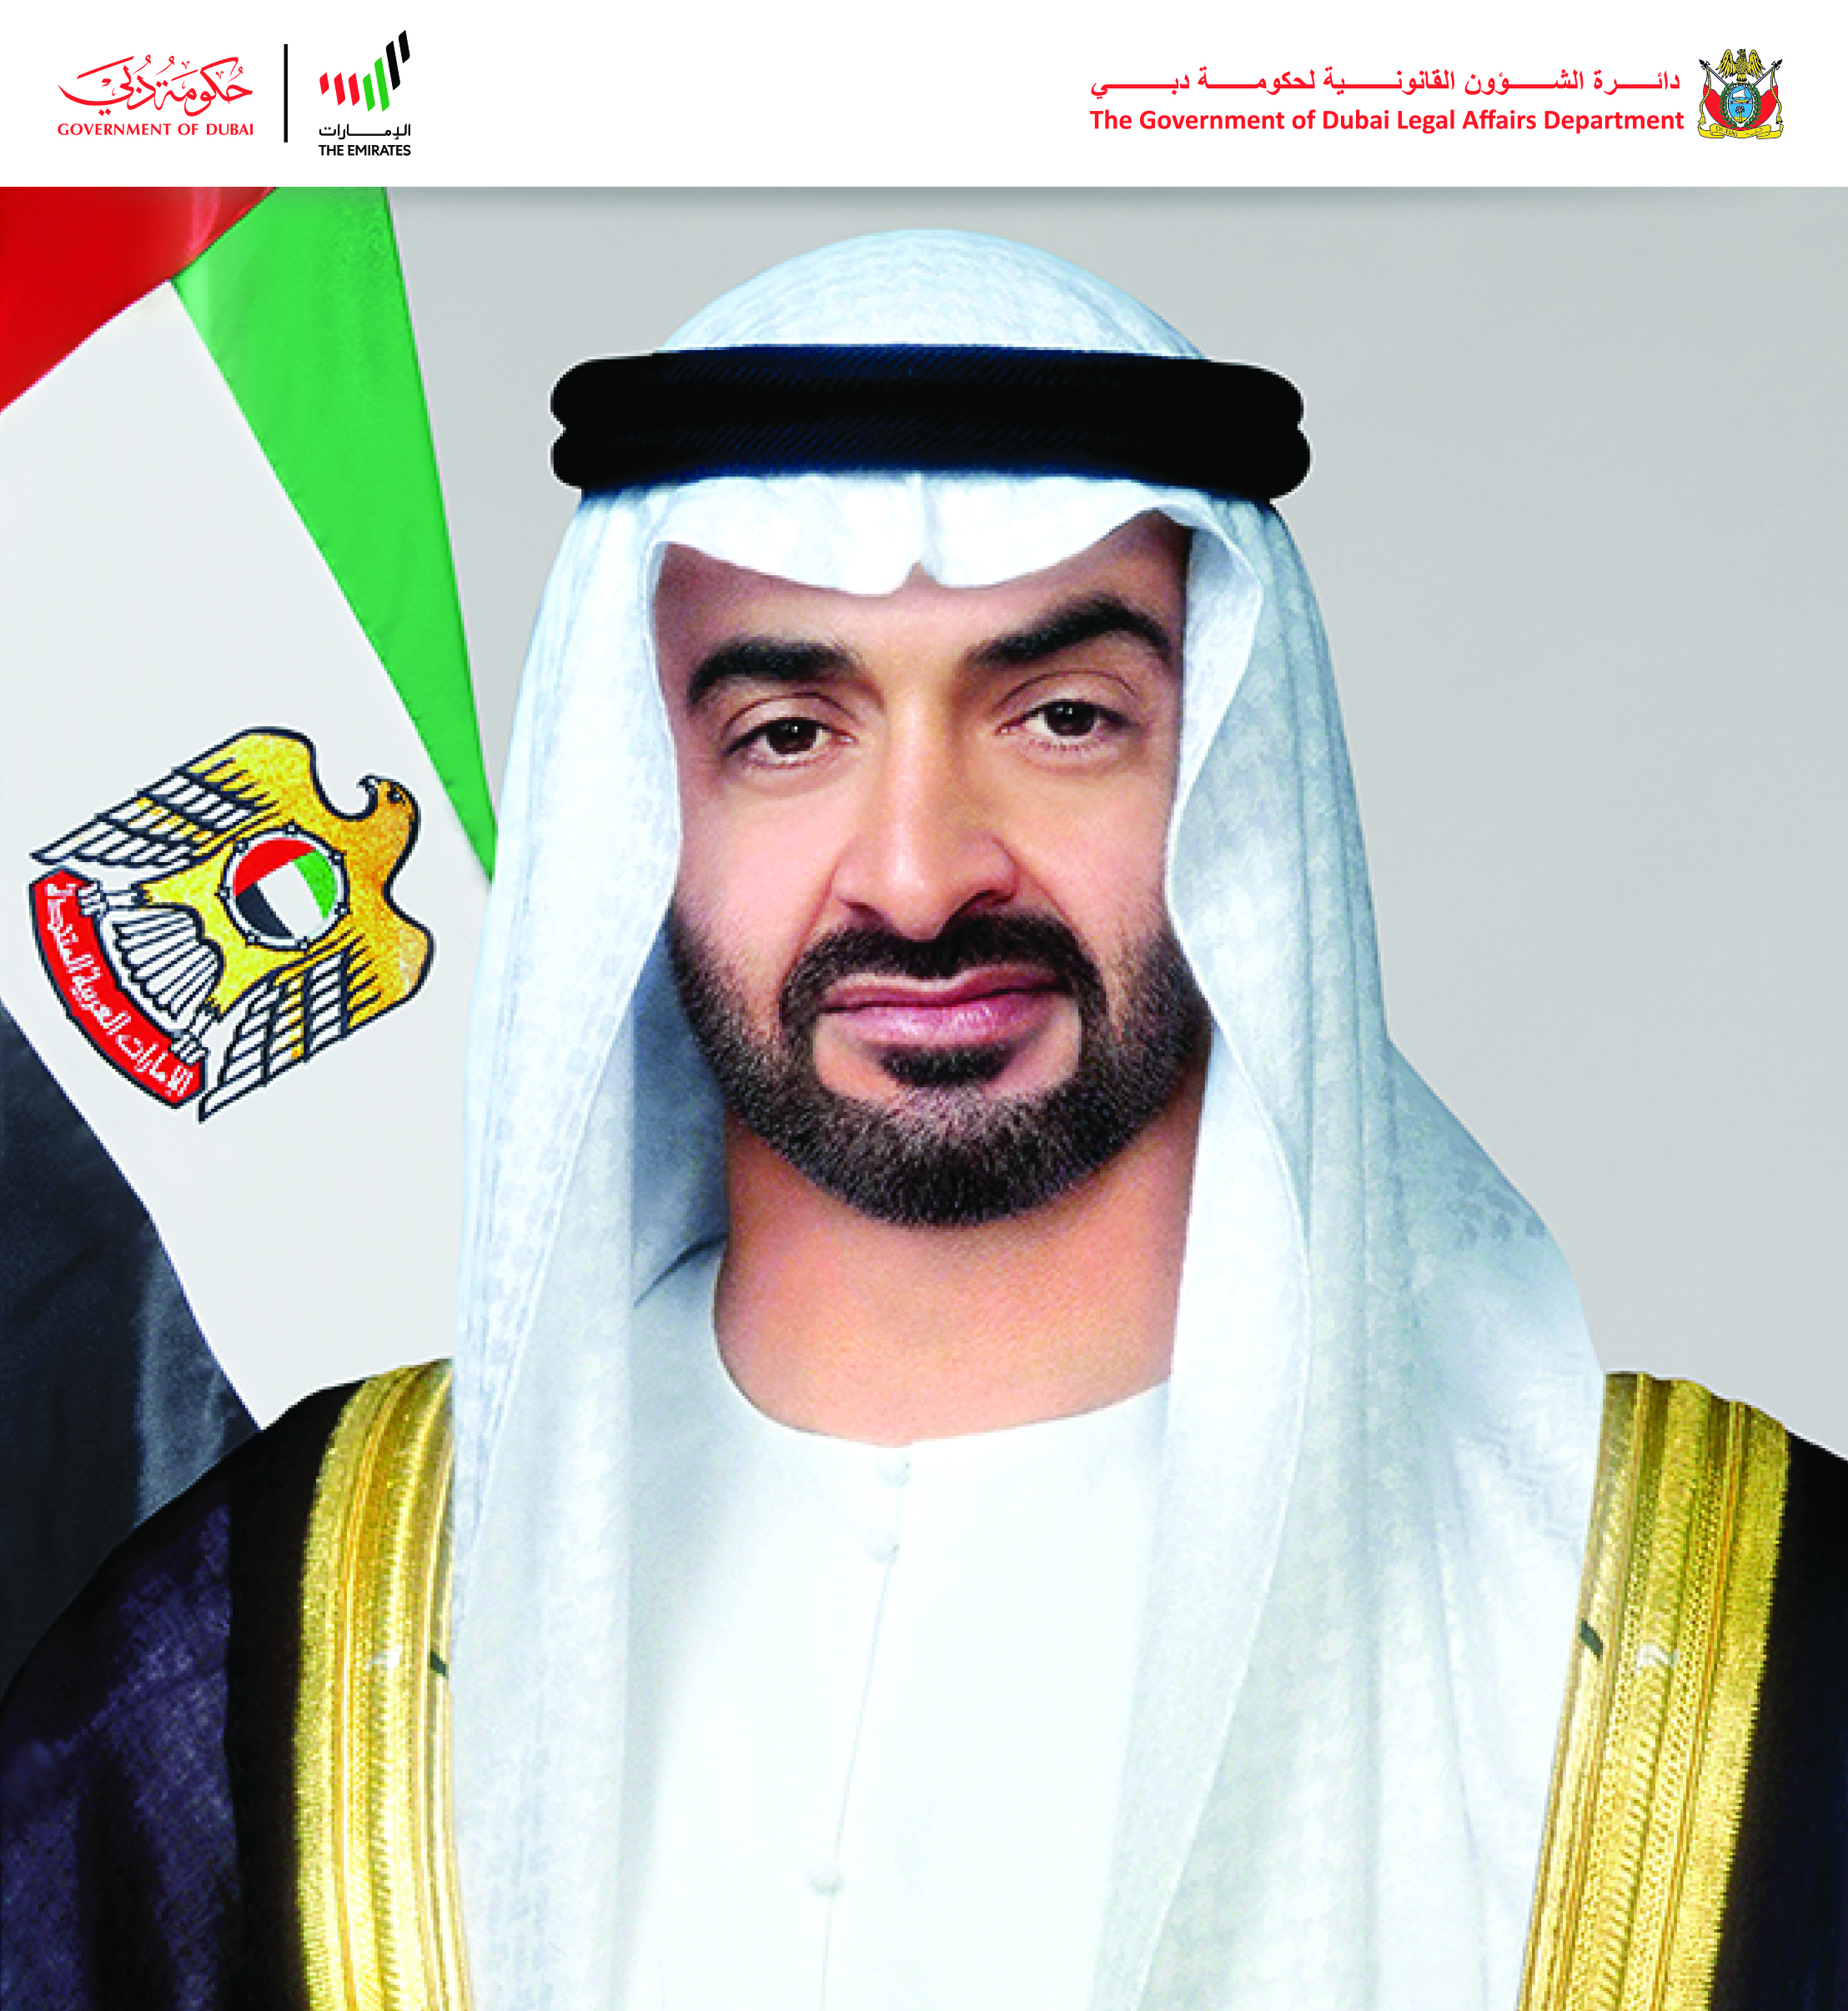 تصريح سعادة مدير عام دائرة الشؤون القانونية لحكومة دبي بمناسبة القرارات والمراسيم الجديدة لصاحب السمو رئيس الدولة